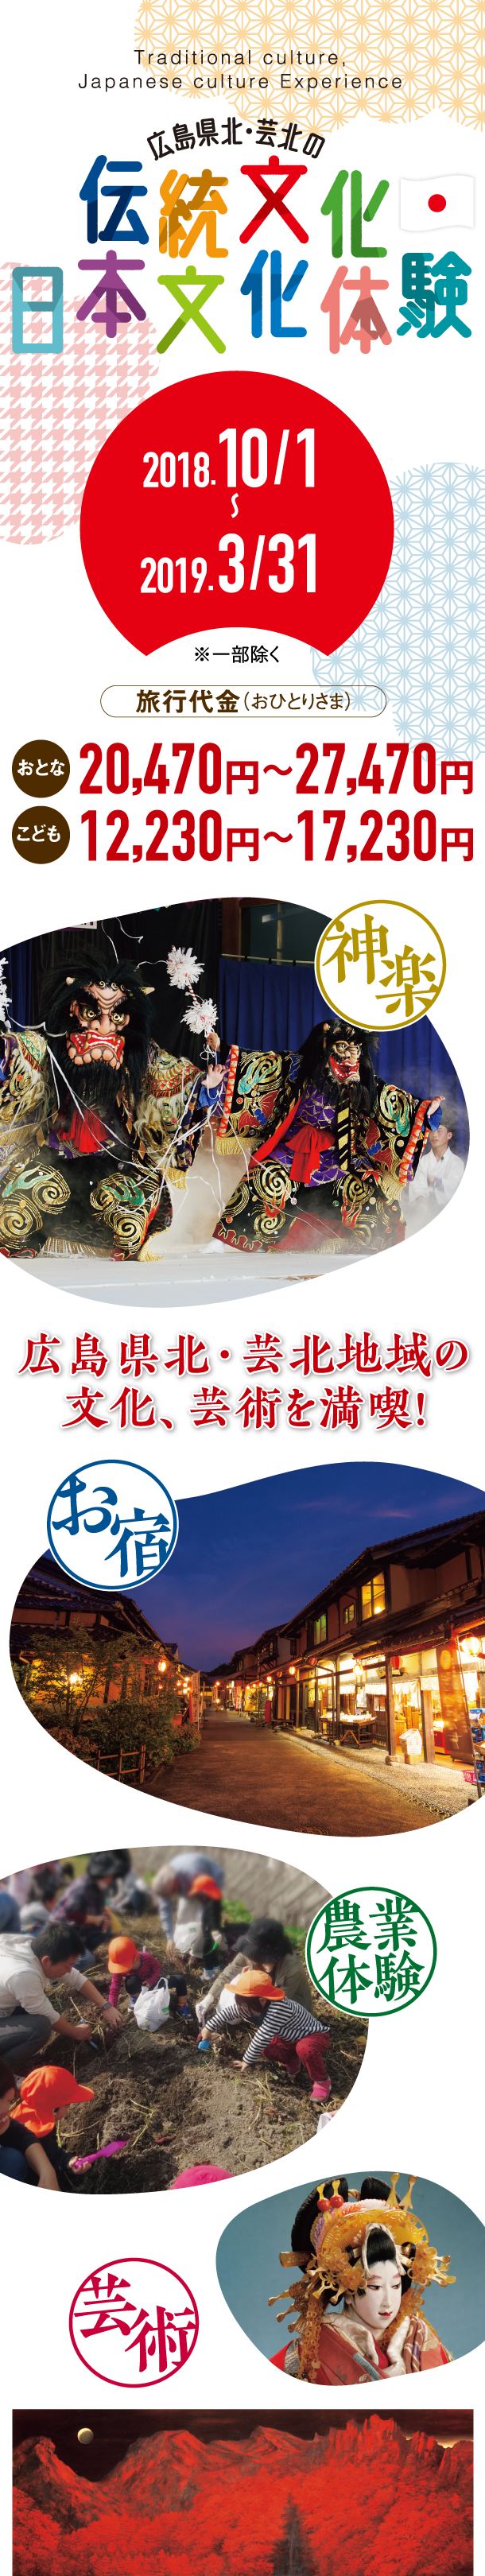 伝統文・化日本文化体験 1泊2日の旅